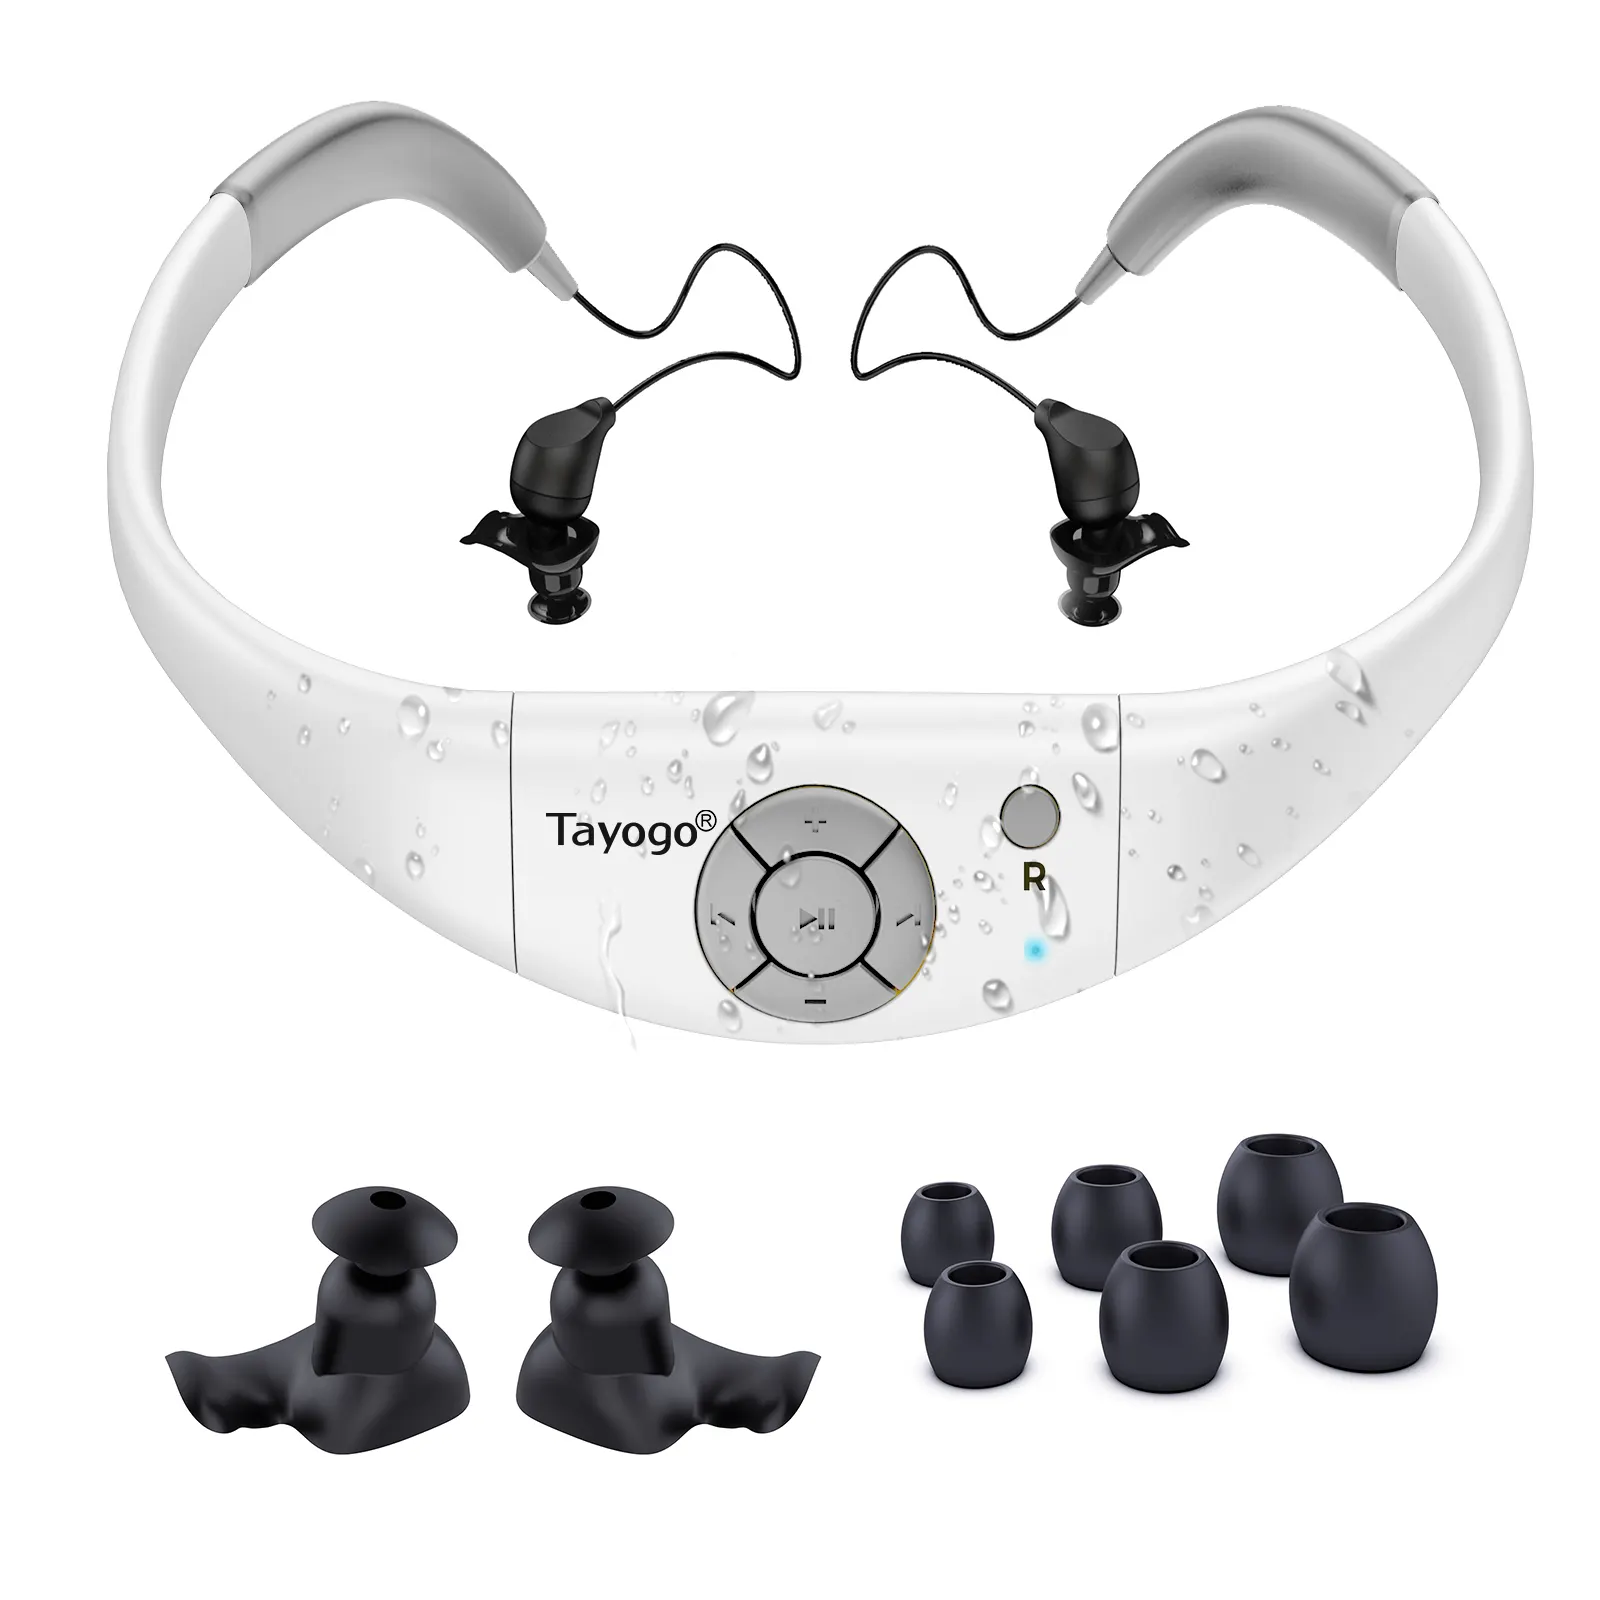 Wasserdichter MP3-Player zum Schwimmen, Tayogo IPX8 8GB Unterwasser kopfhörer mit Shuffle-Funktion, für Wassersport, Laufen